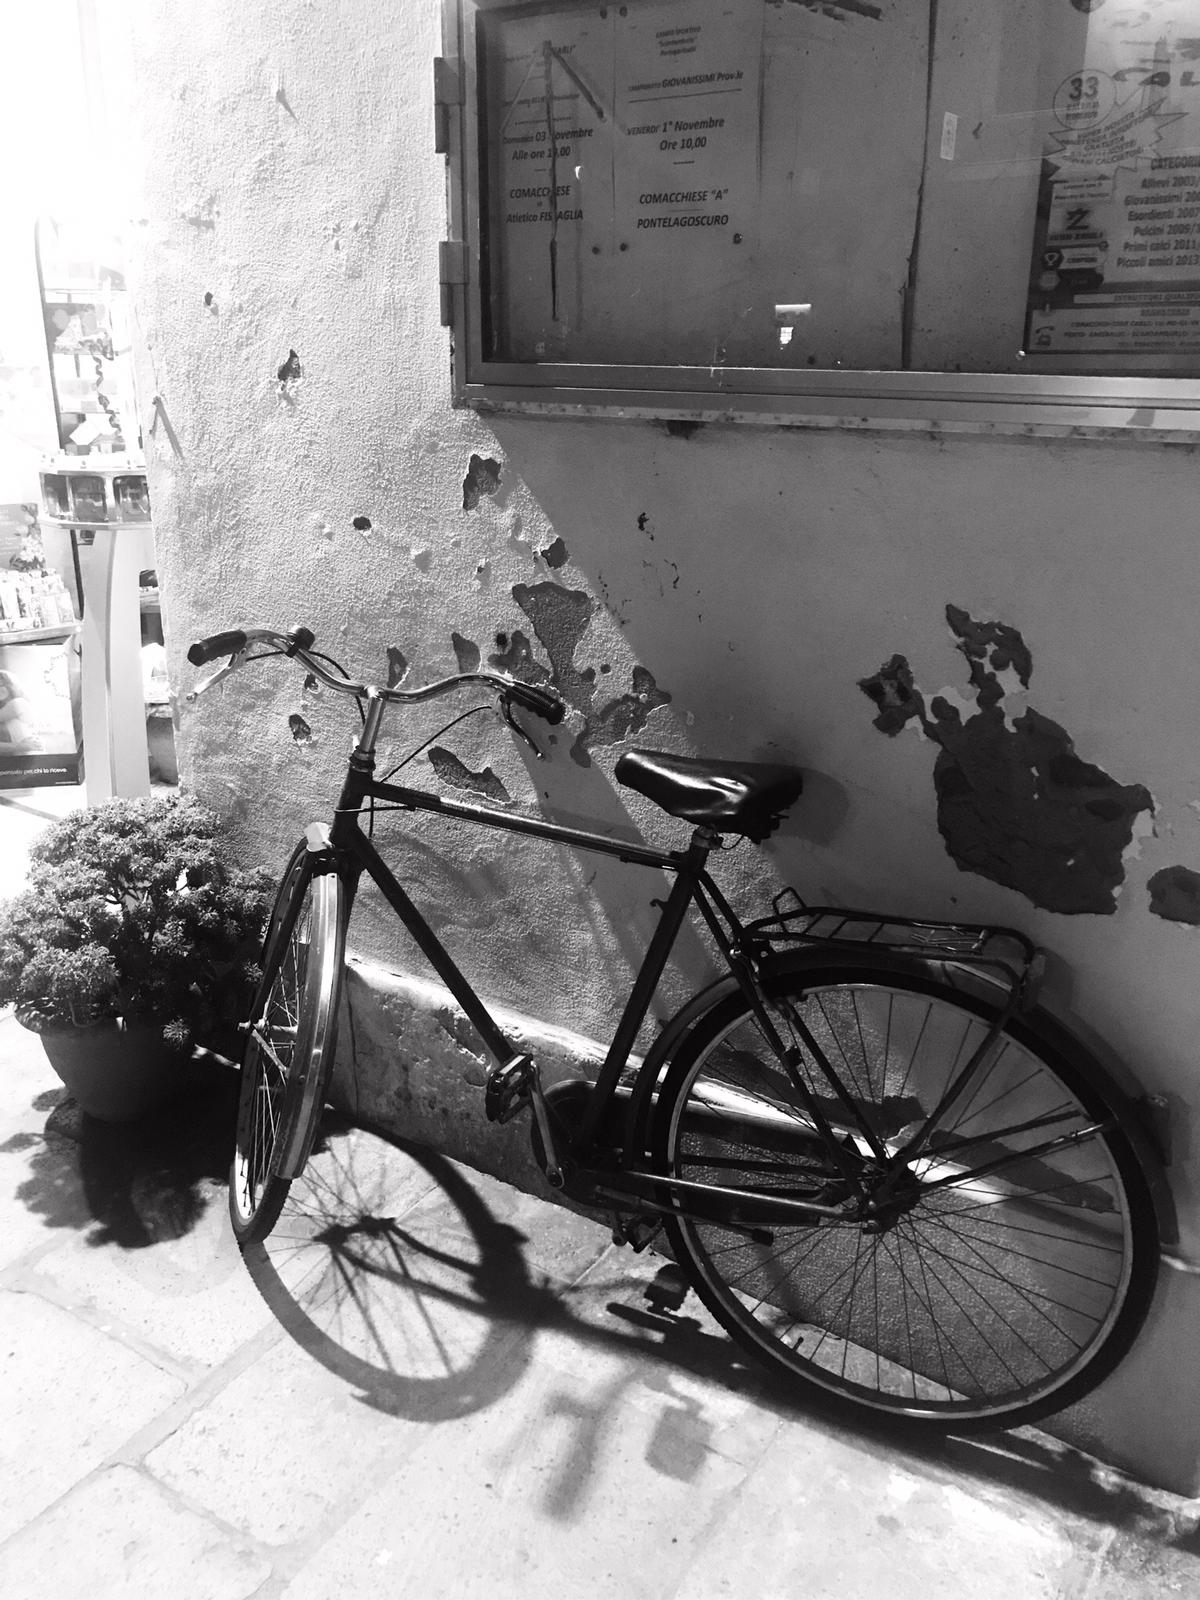 Bike against ruined wall...